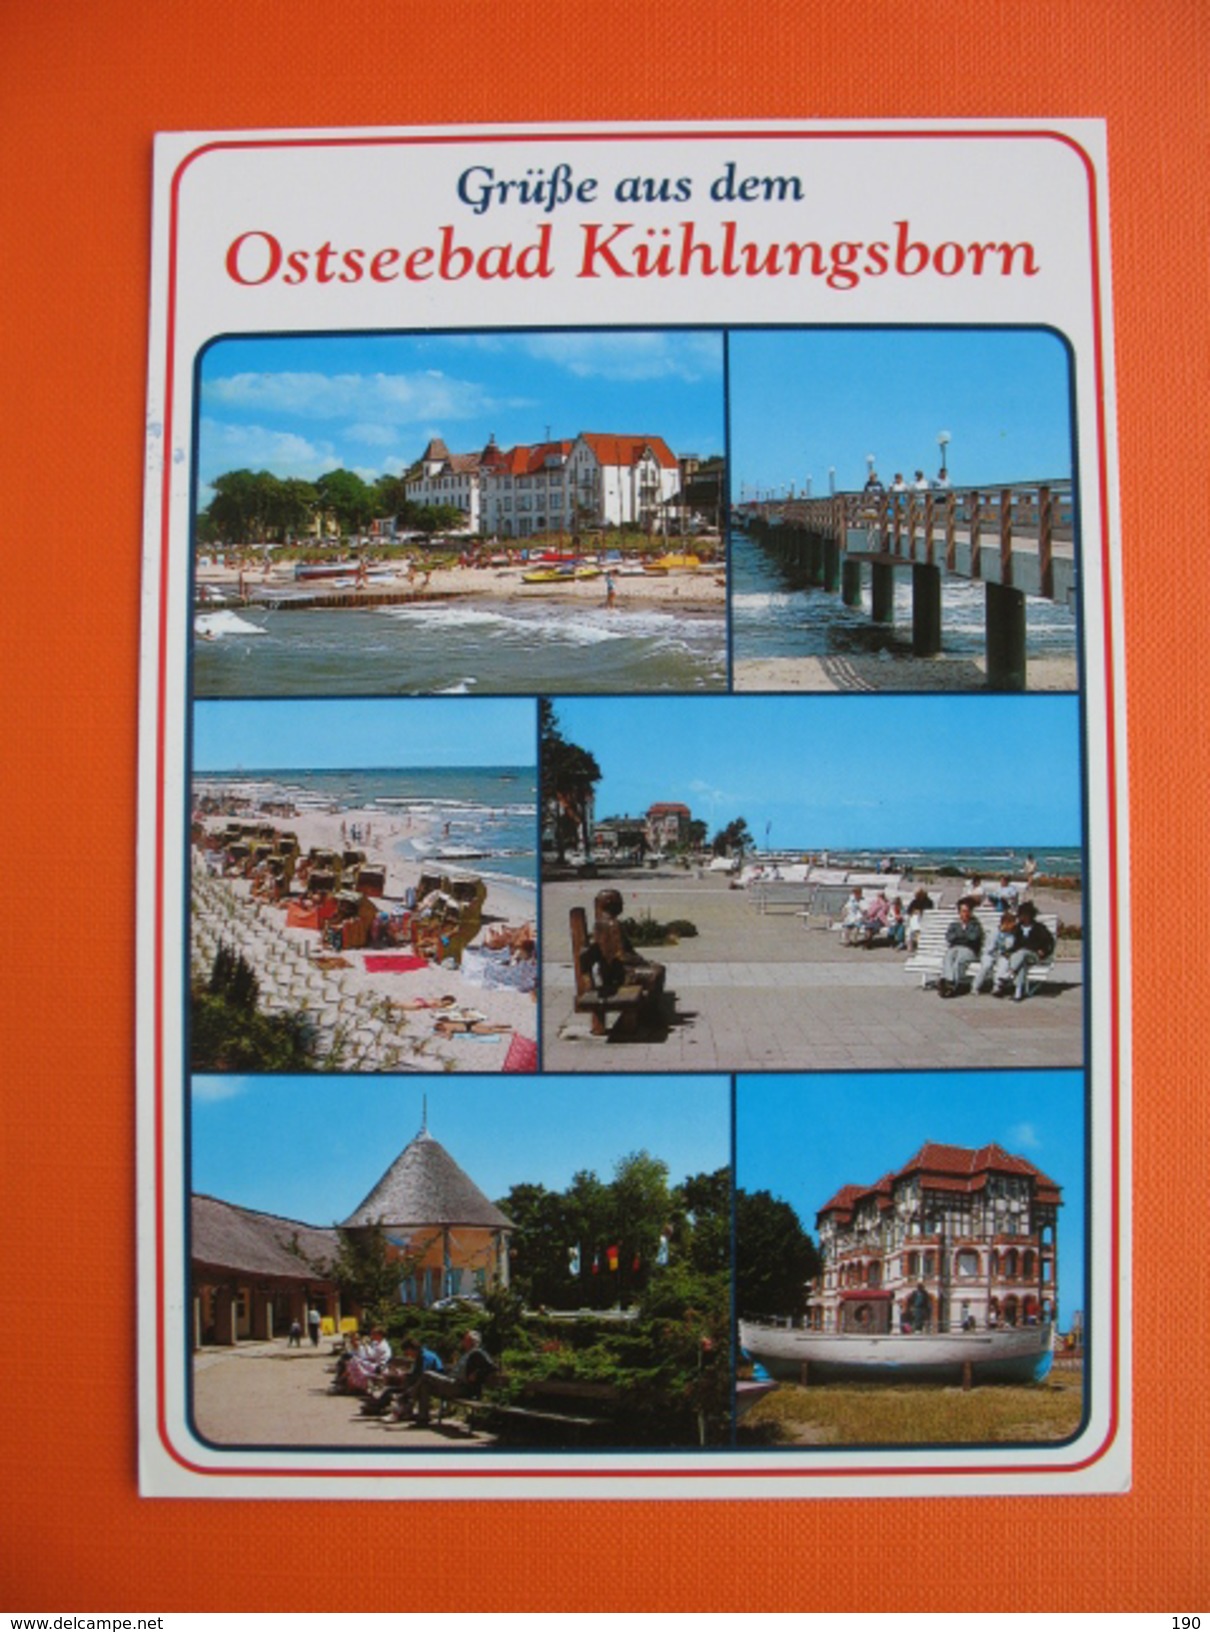 Kuhlungsborn - Kuehlungsborn